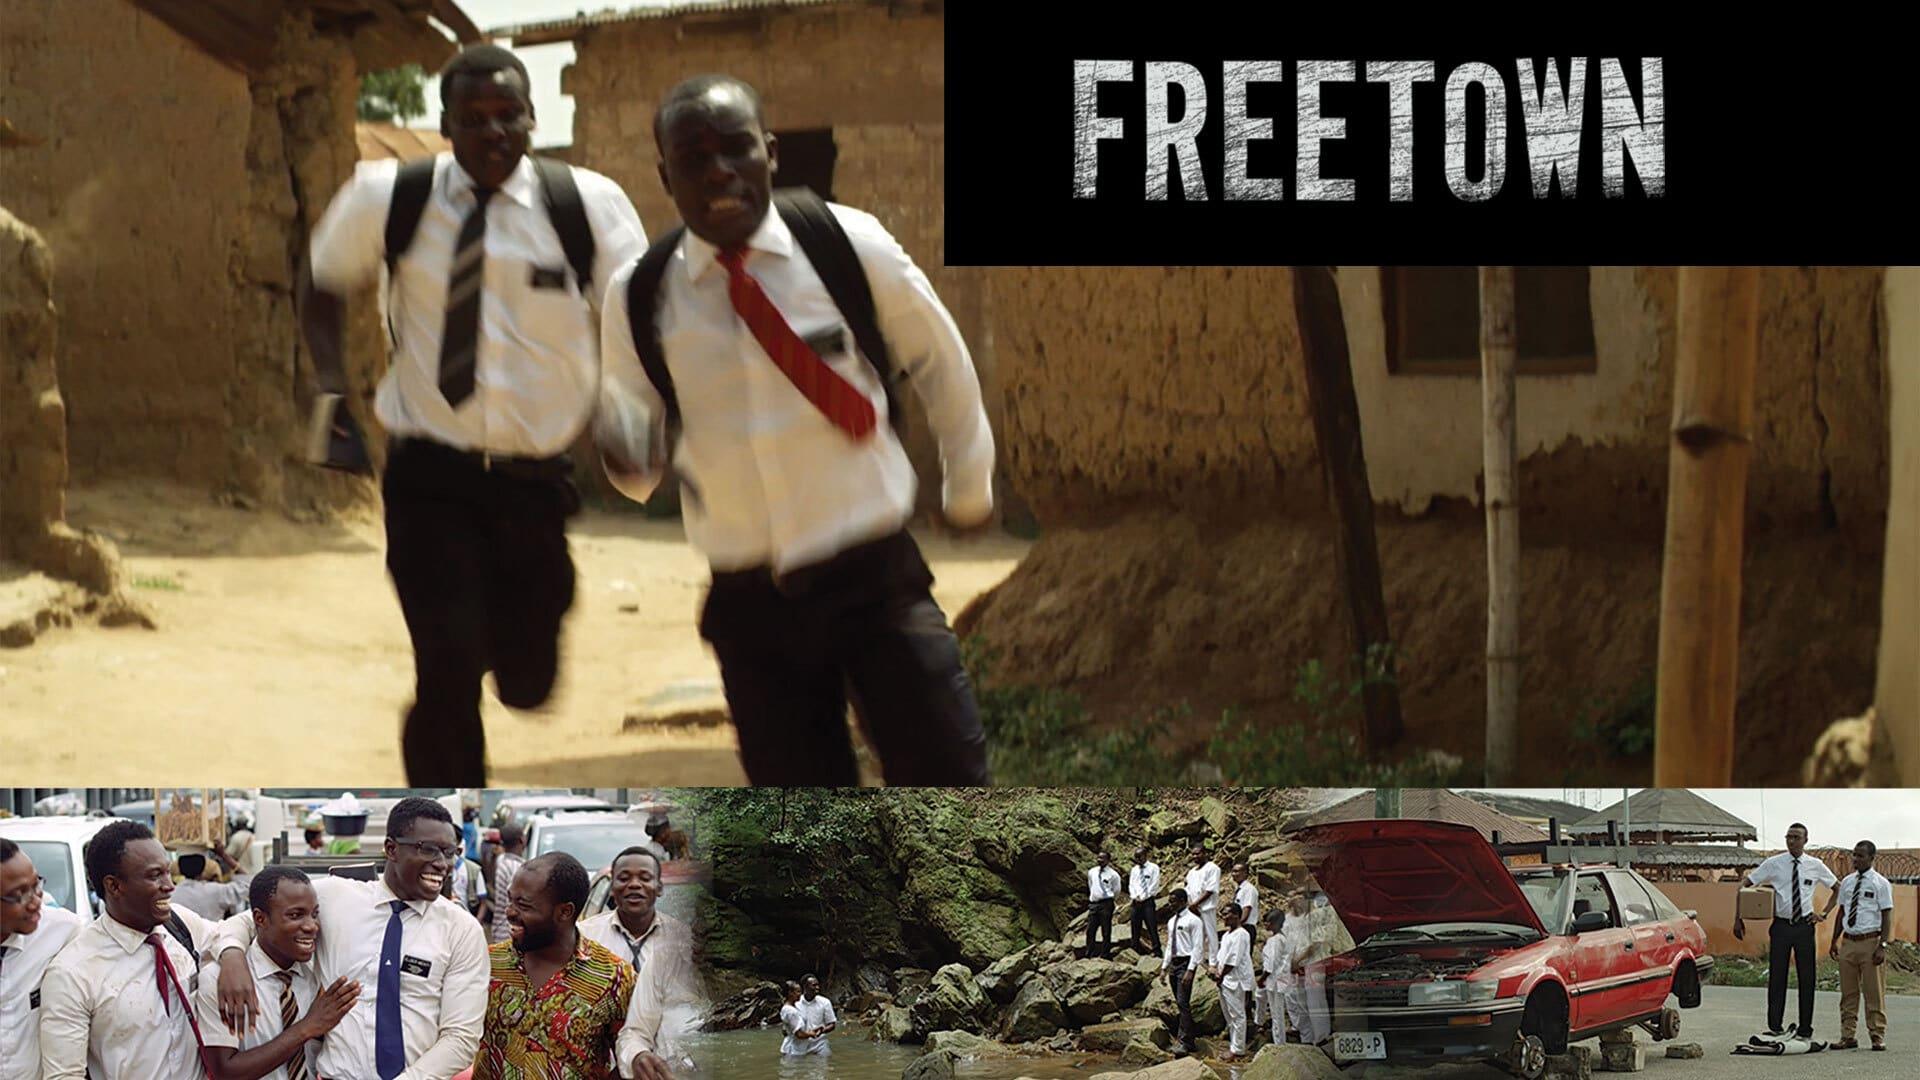 دانلود فیلم Freetown 2015